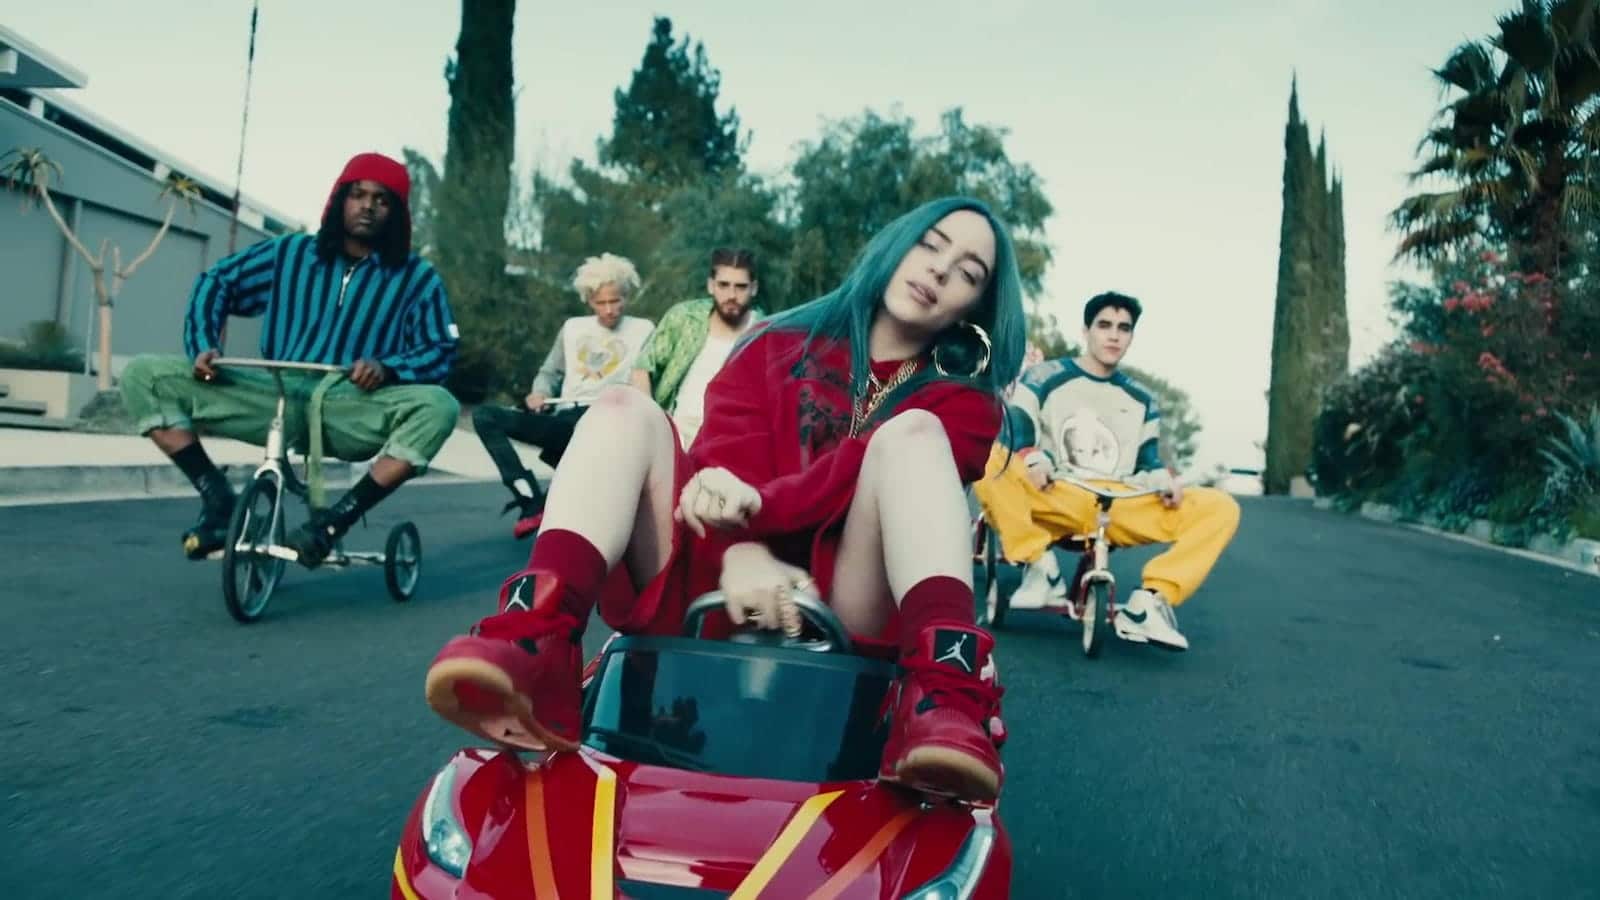 Billie Eilish rides a big wheel in her music video